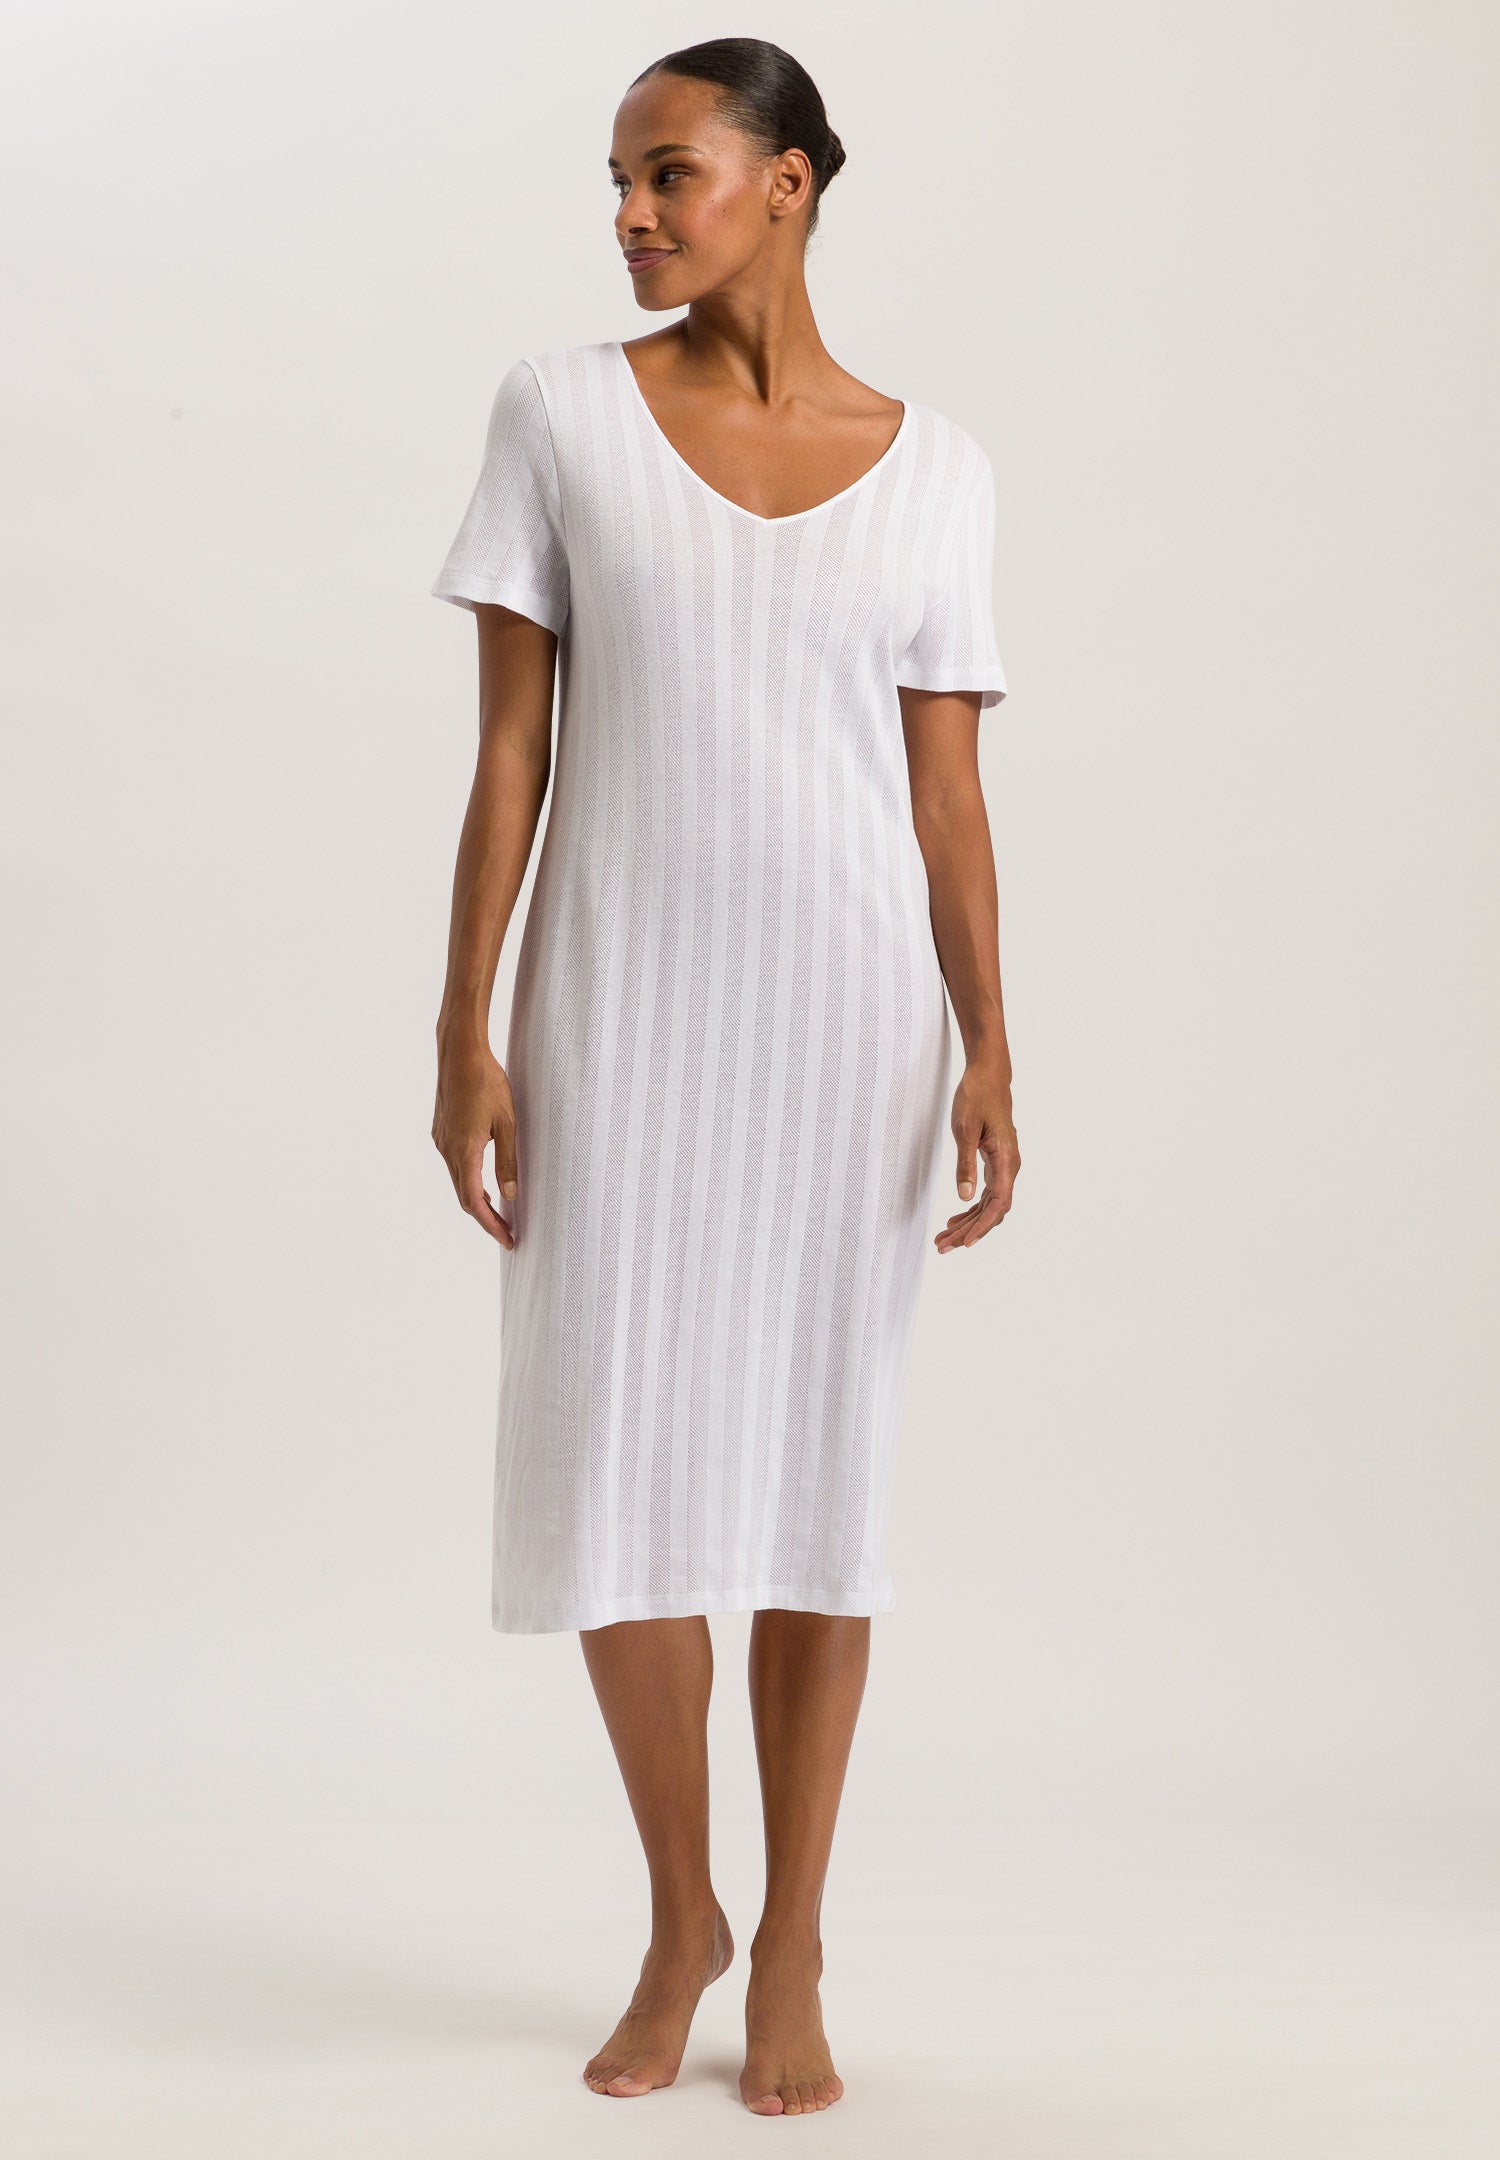 74907 Simone S/Slv Nightgown - 101 White